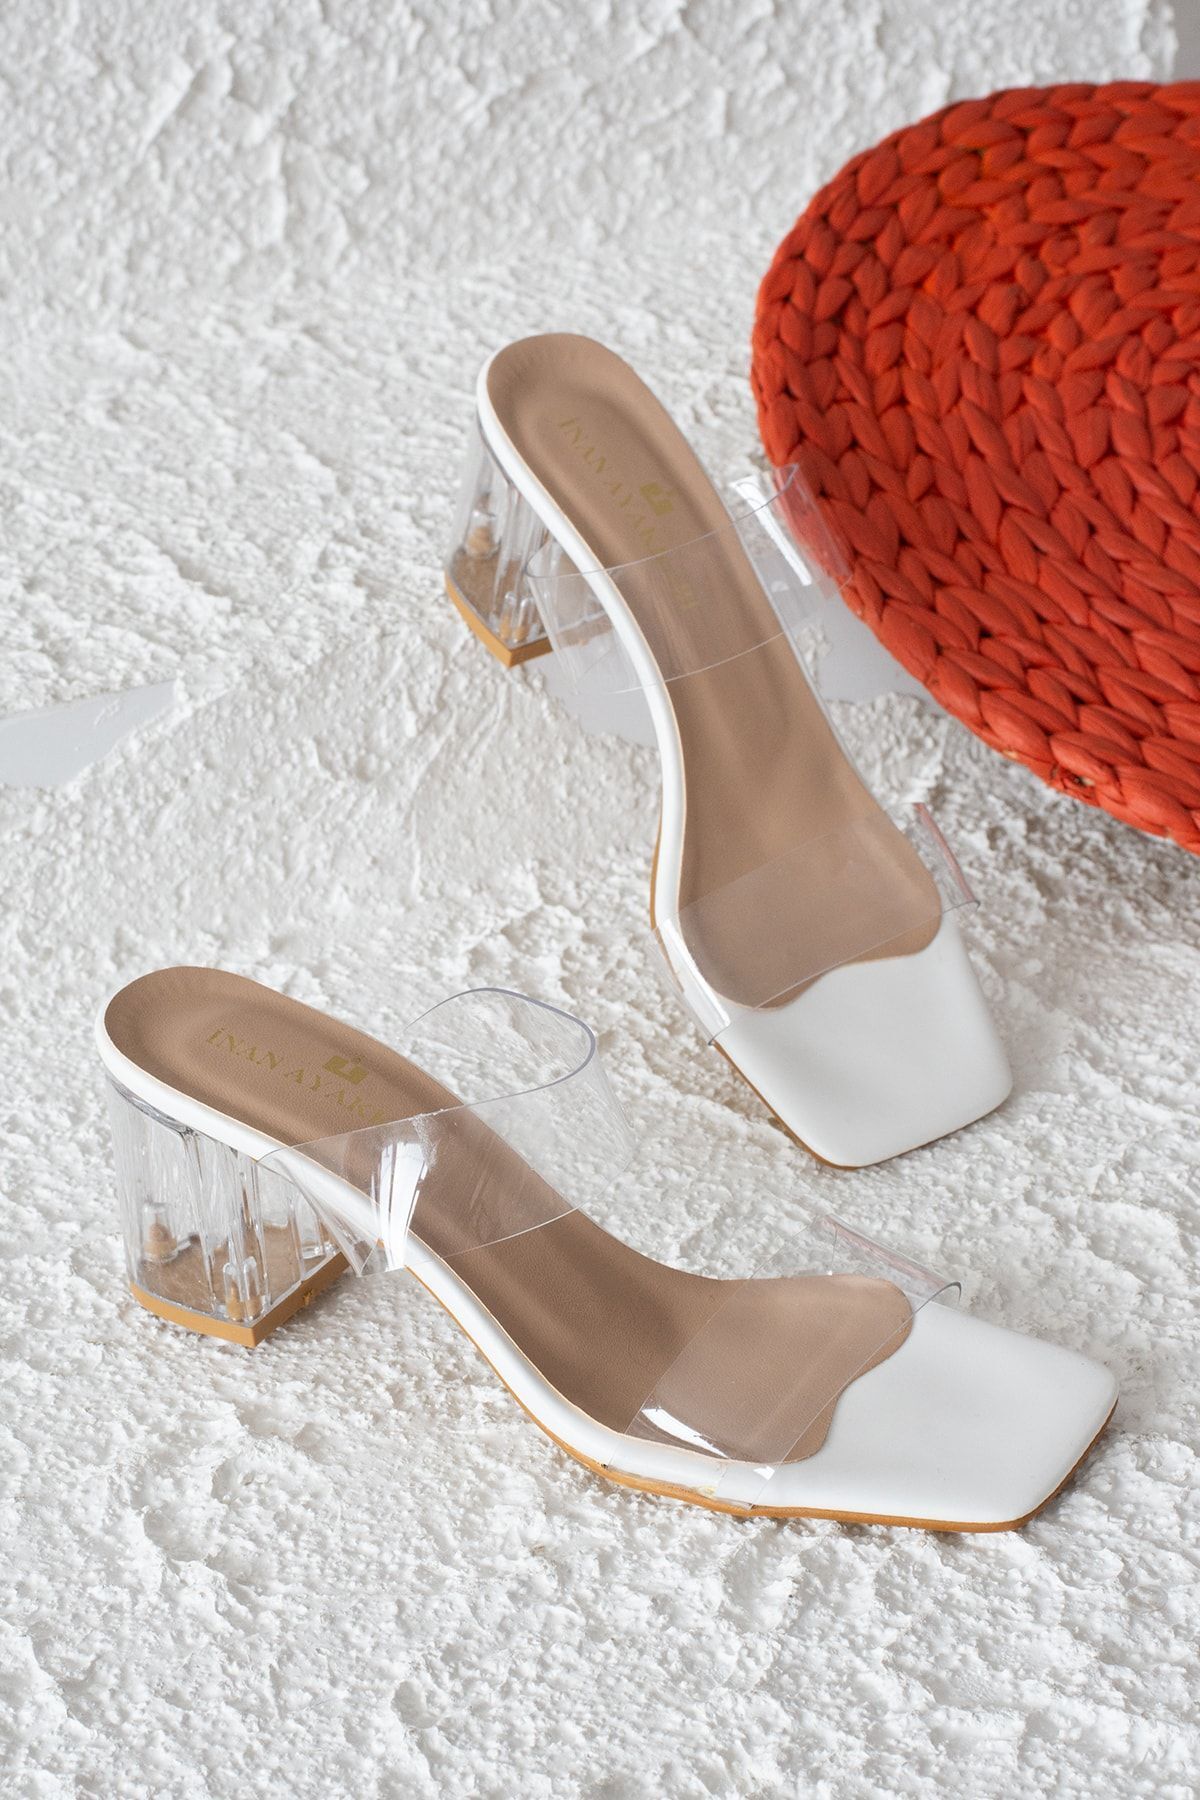 İnan Ayakkabı Kadın Beyaz Şeffaf Bant&şeffaf Topuklu Ayakkabı 6 Cm Topuk